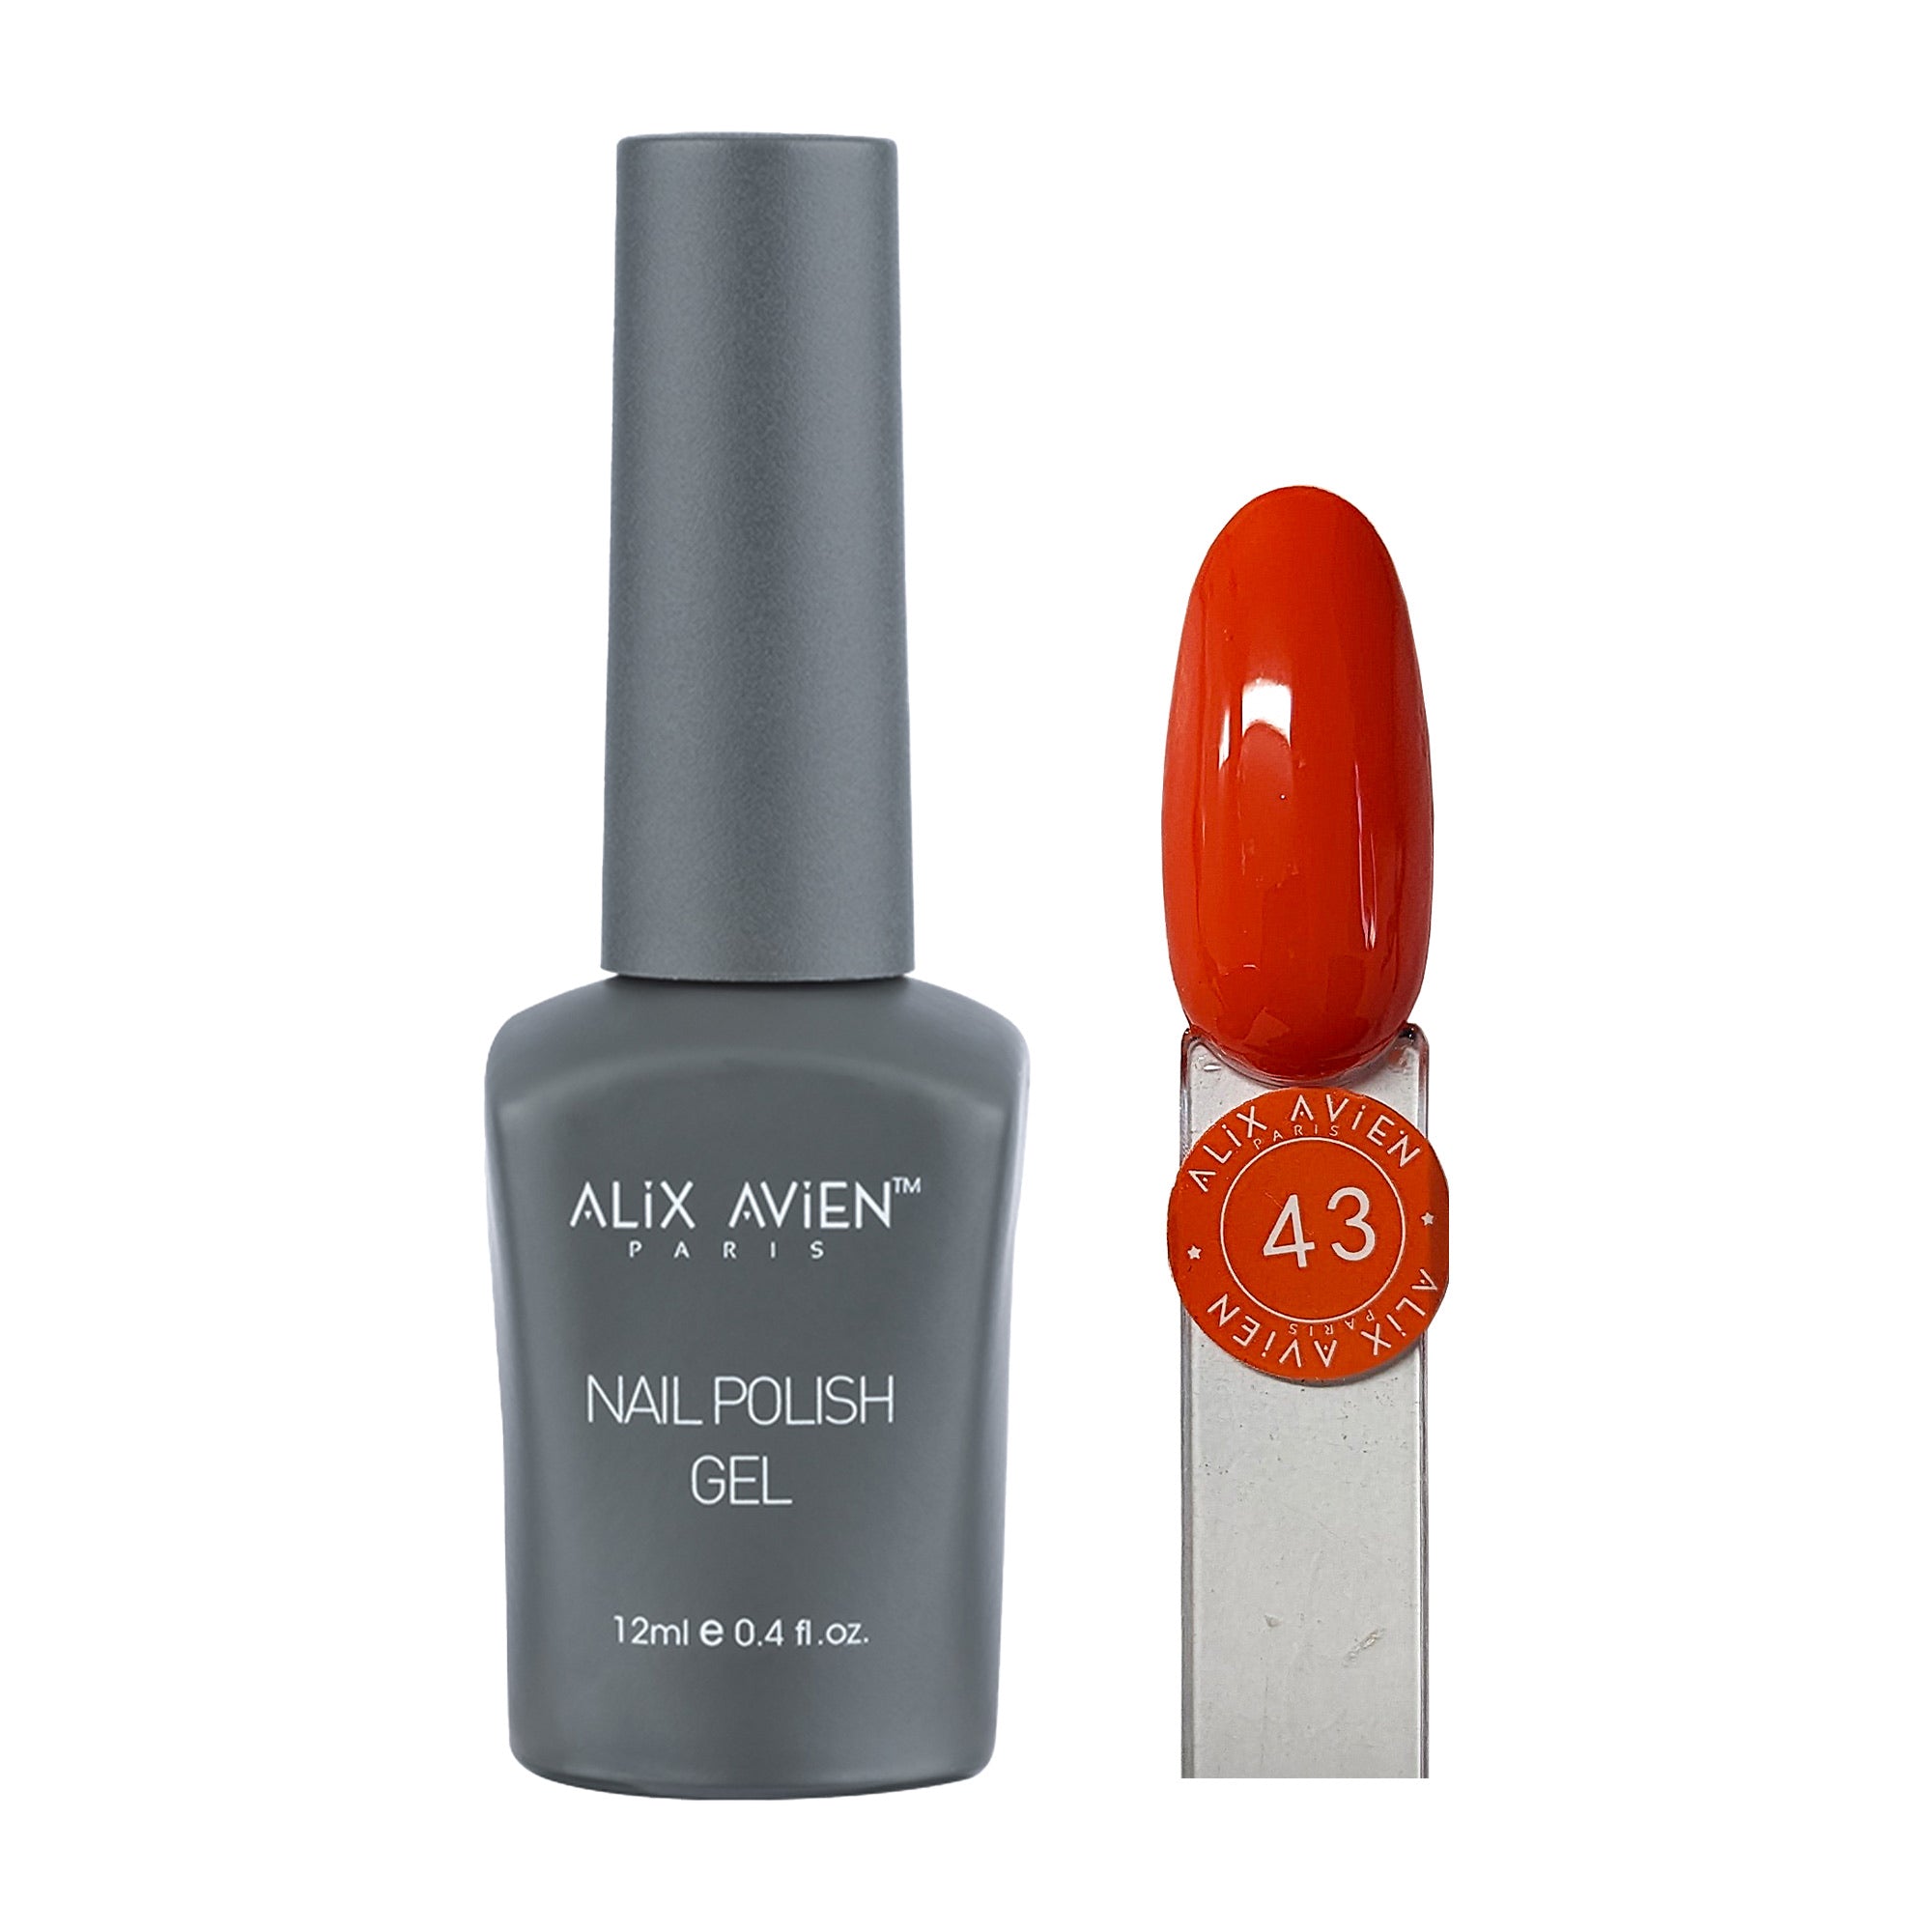 Alix Avien - Nail Polish Gel No.43 (Coral)